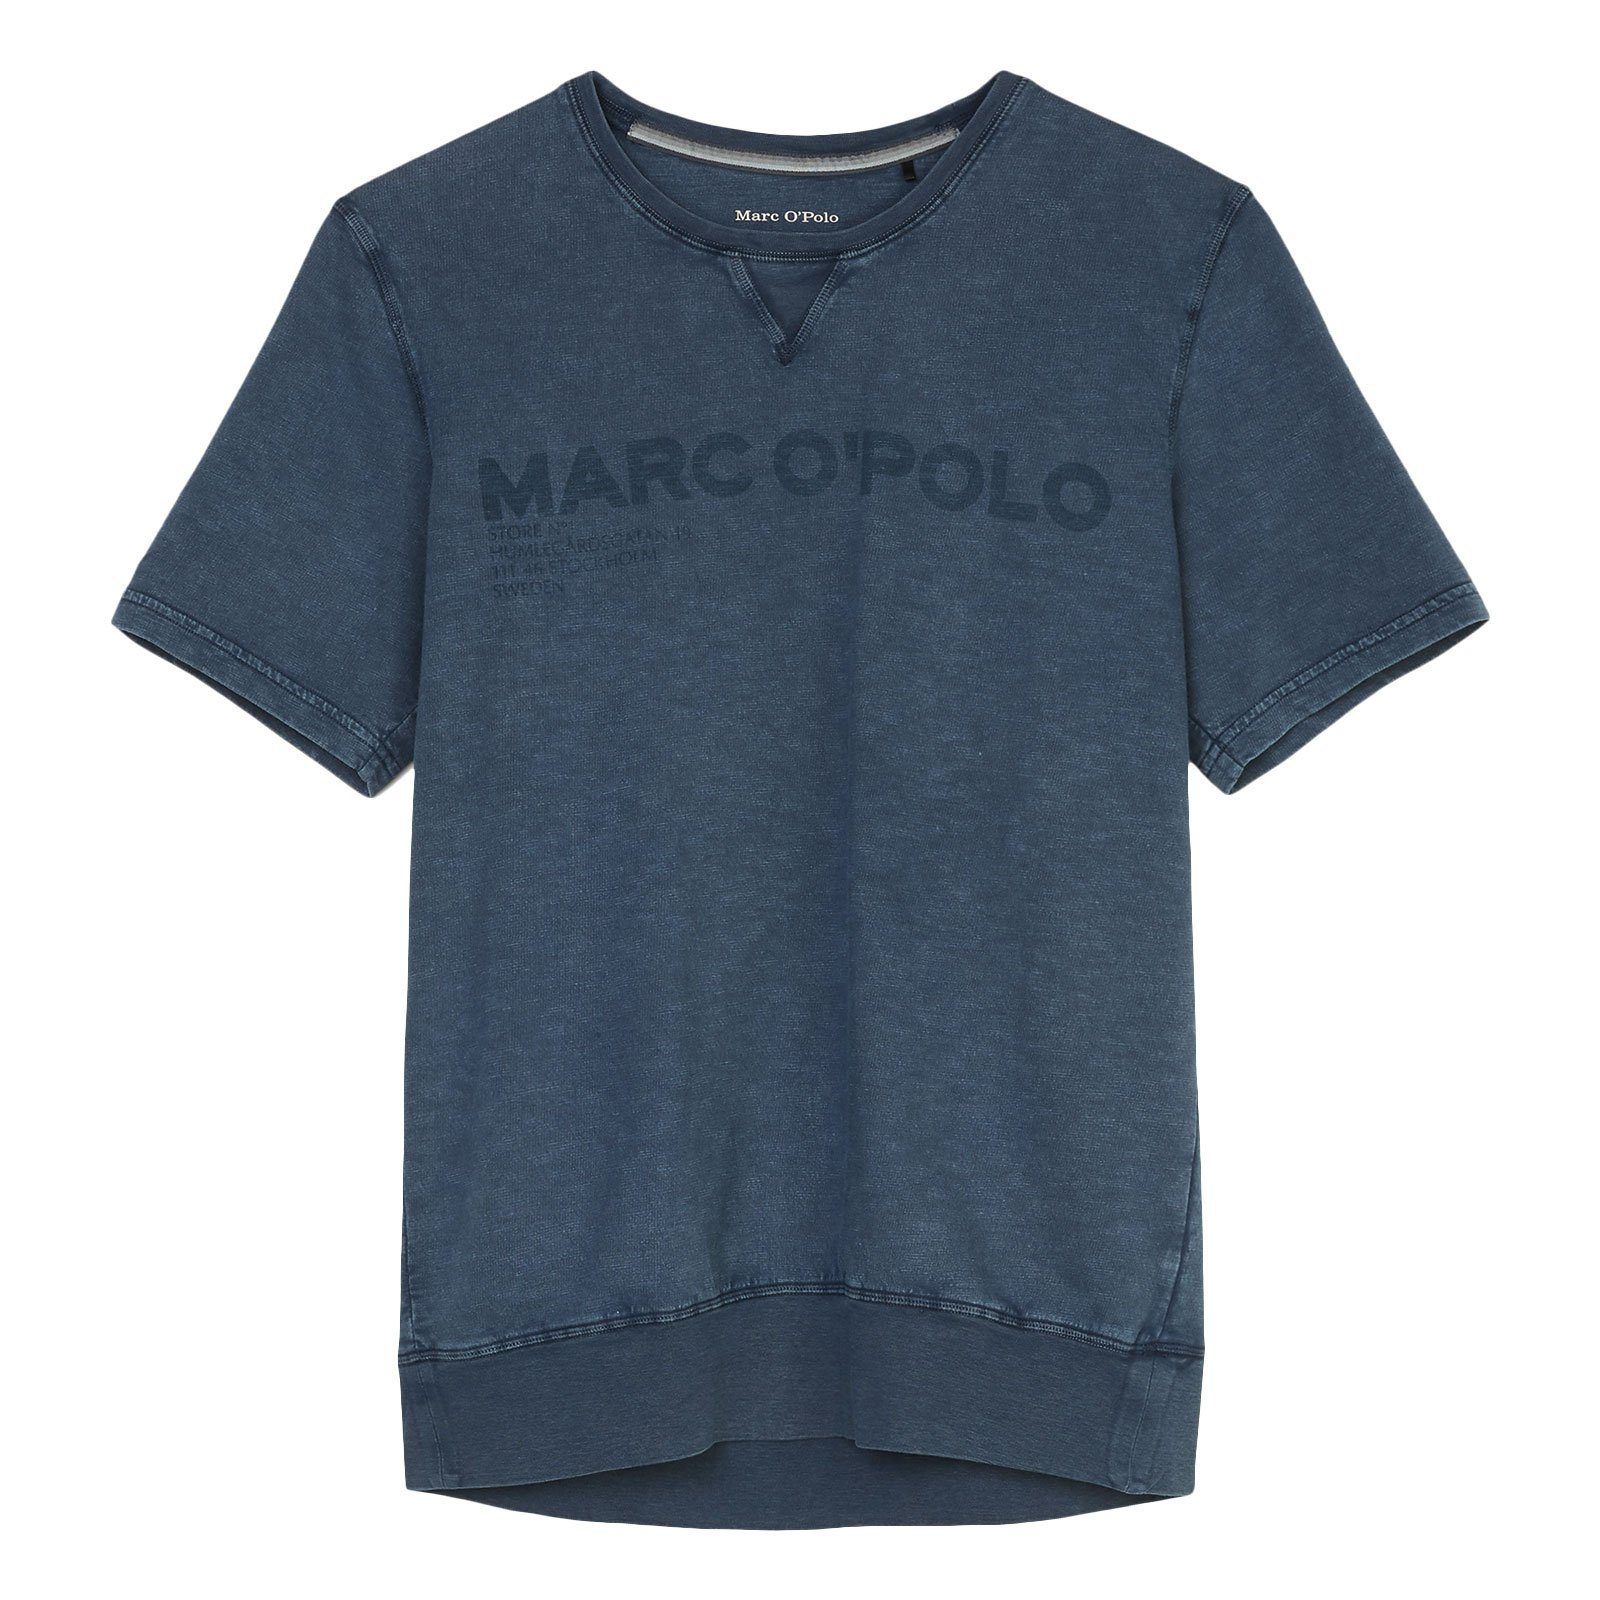 Marc O'Polo T-Shirt Shirt Crew Neck mit Marken-Aufschrift 816 jeansblue